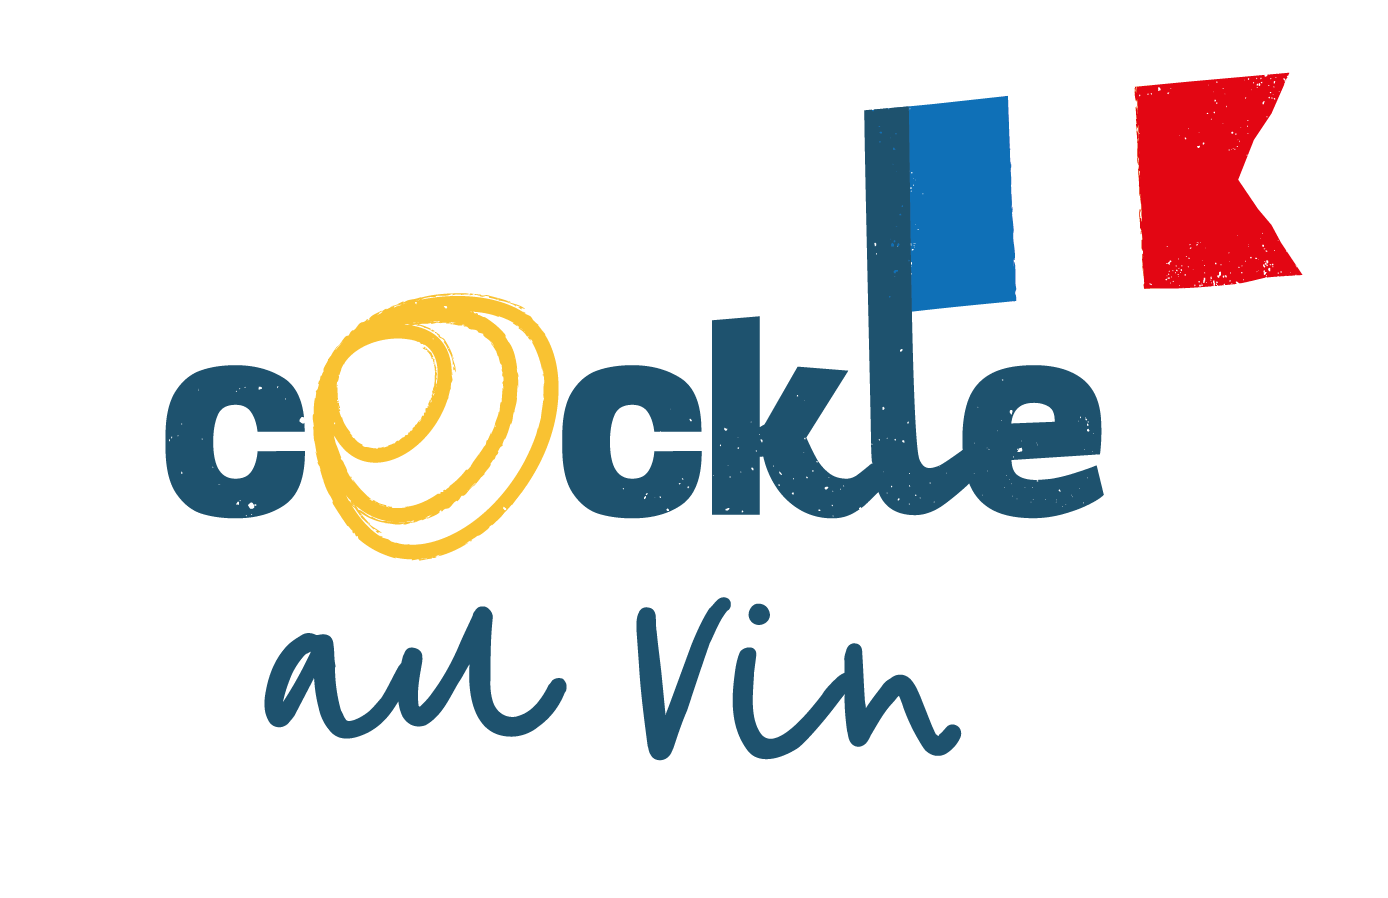 Cockle au Vin